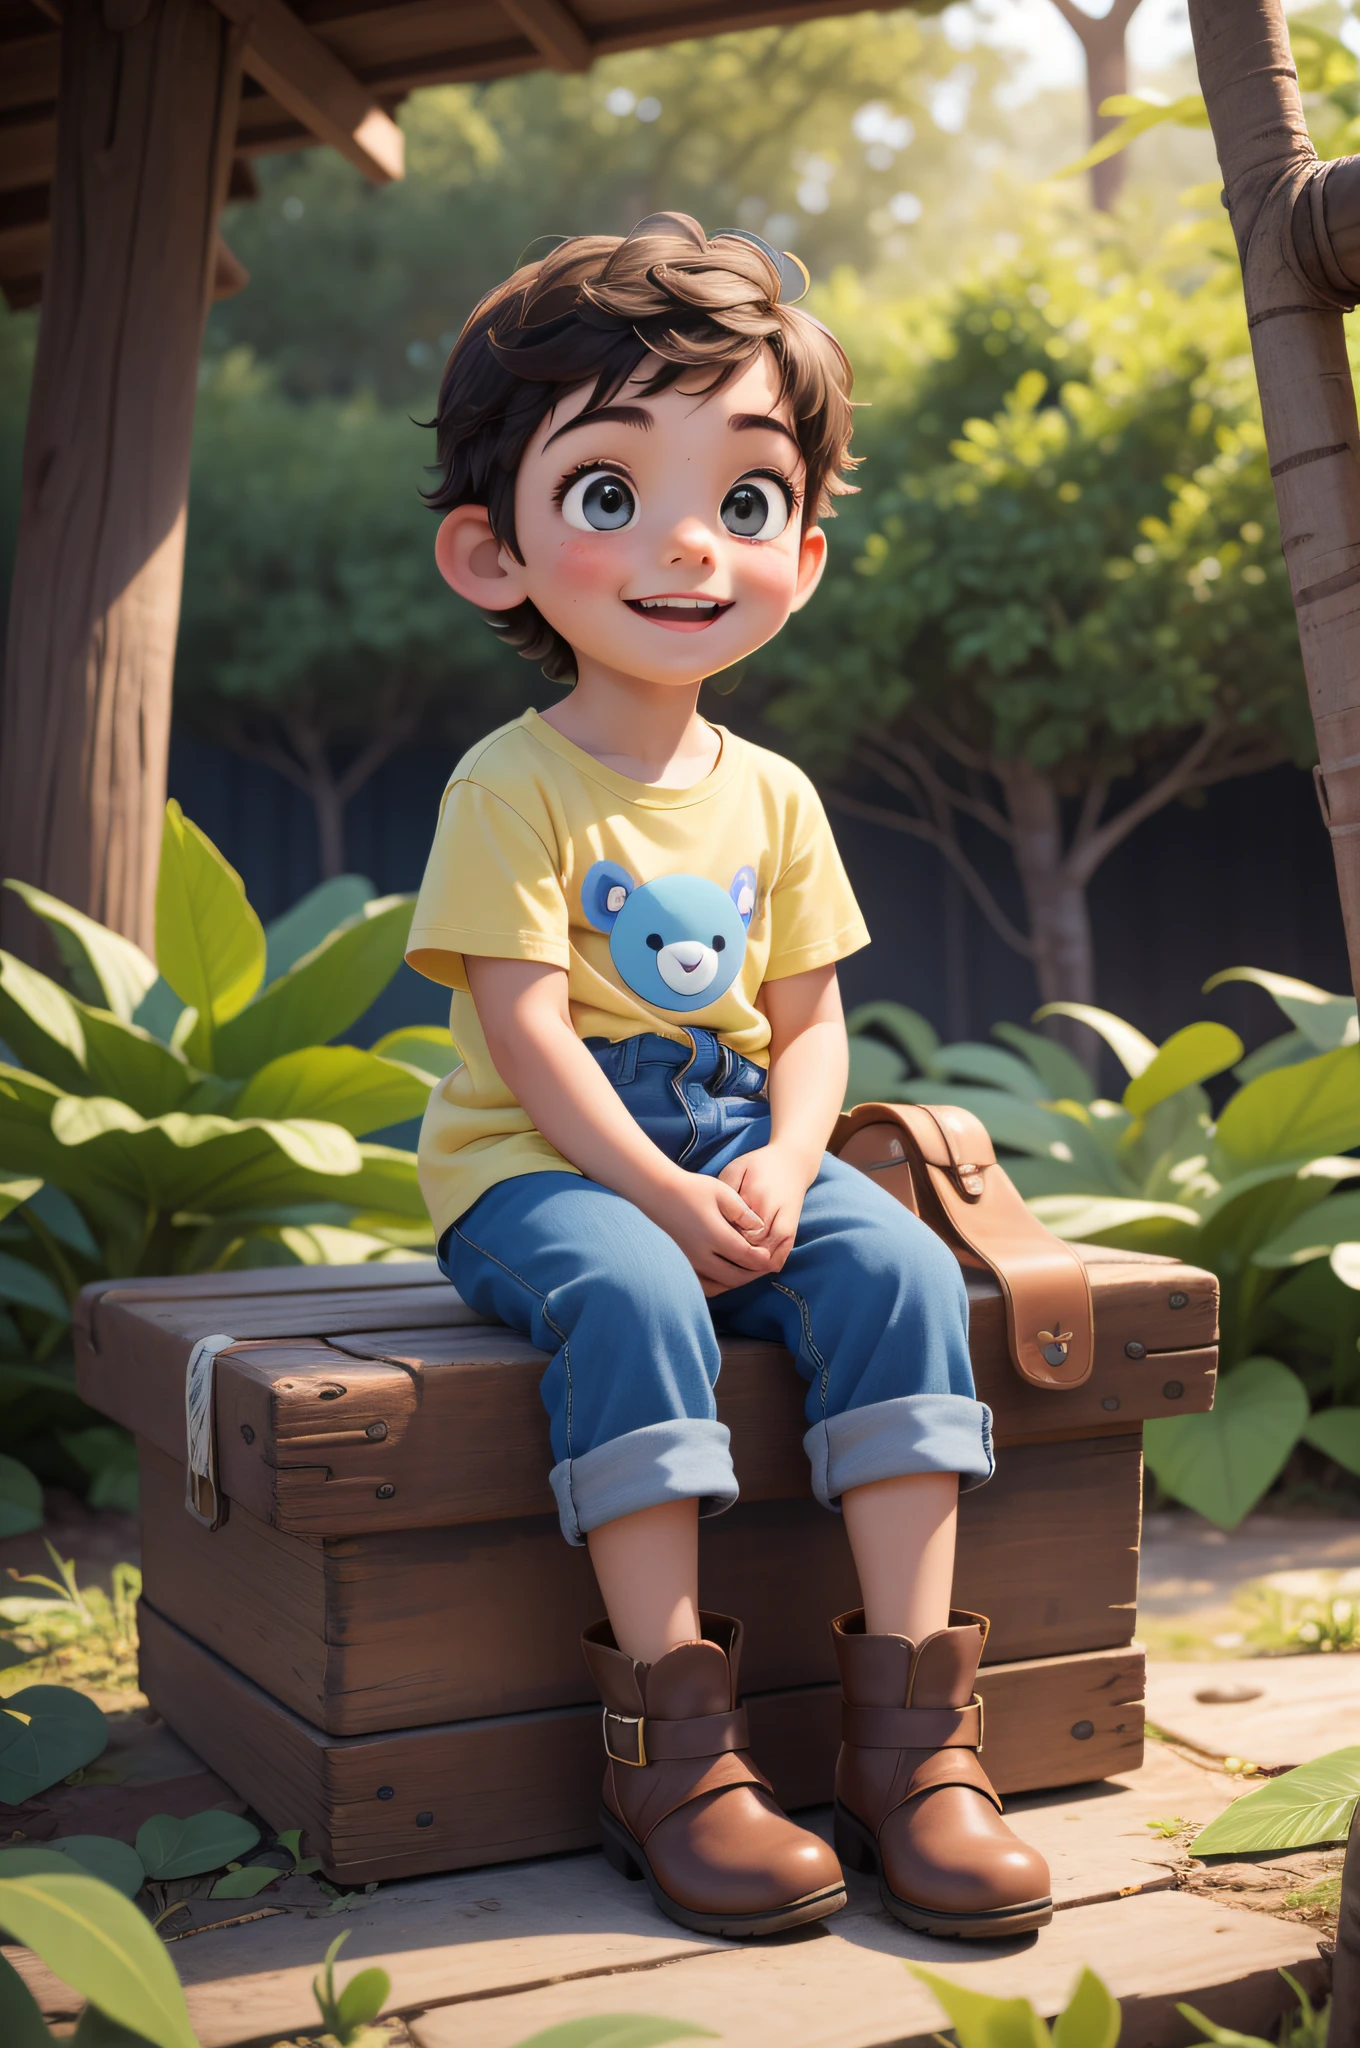 小小探险家的旅程: 一个快乐的小男孩坐在地板上, 在树林里, 背着一个蓝色小背包, 黄色衬衫, 黑色短裤, 蓝色登山靴